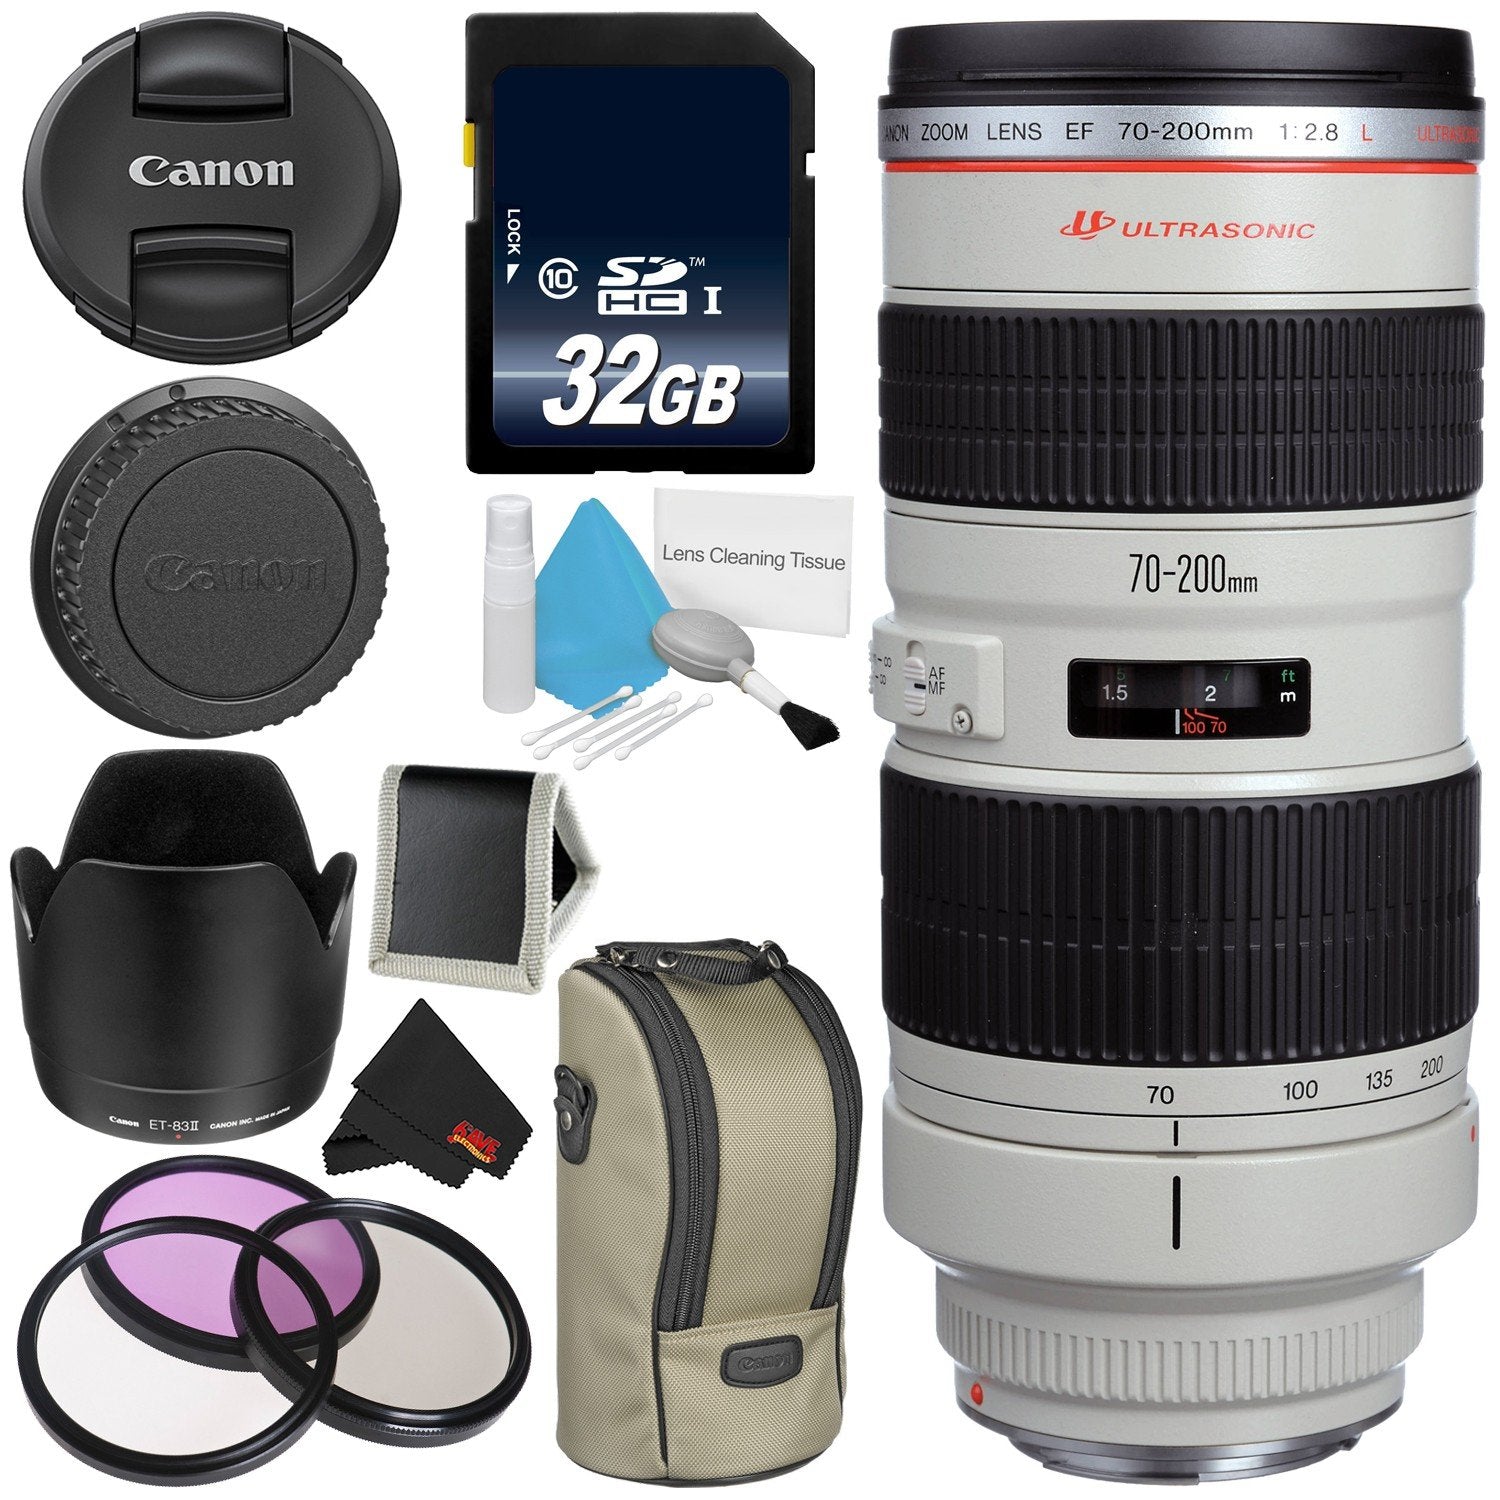 Canon EF 70-200mm f/2.8L USM Telephoto Zoom Lens Bundle for Canon SLR Digital Cameras Intl Model - Advanced